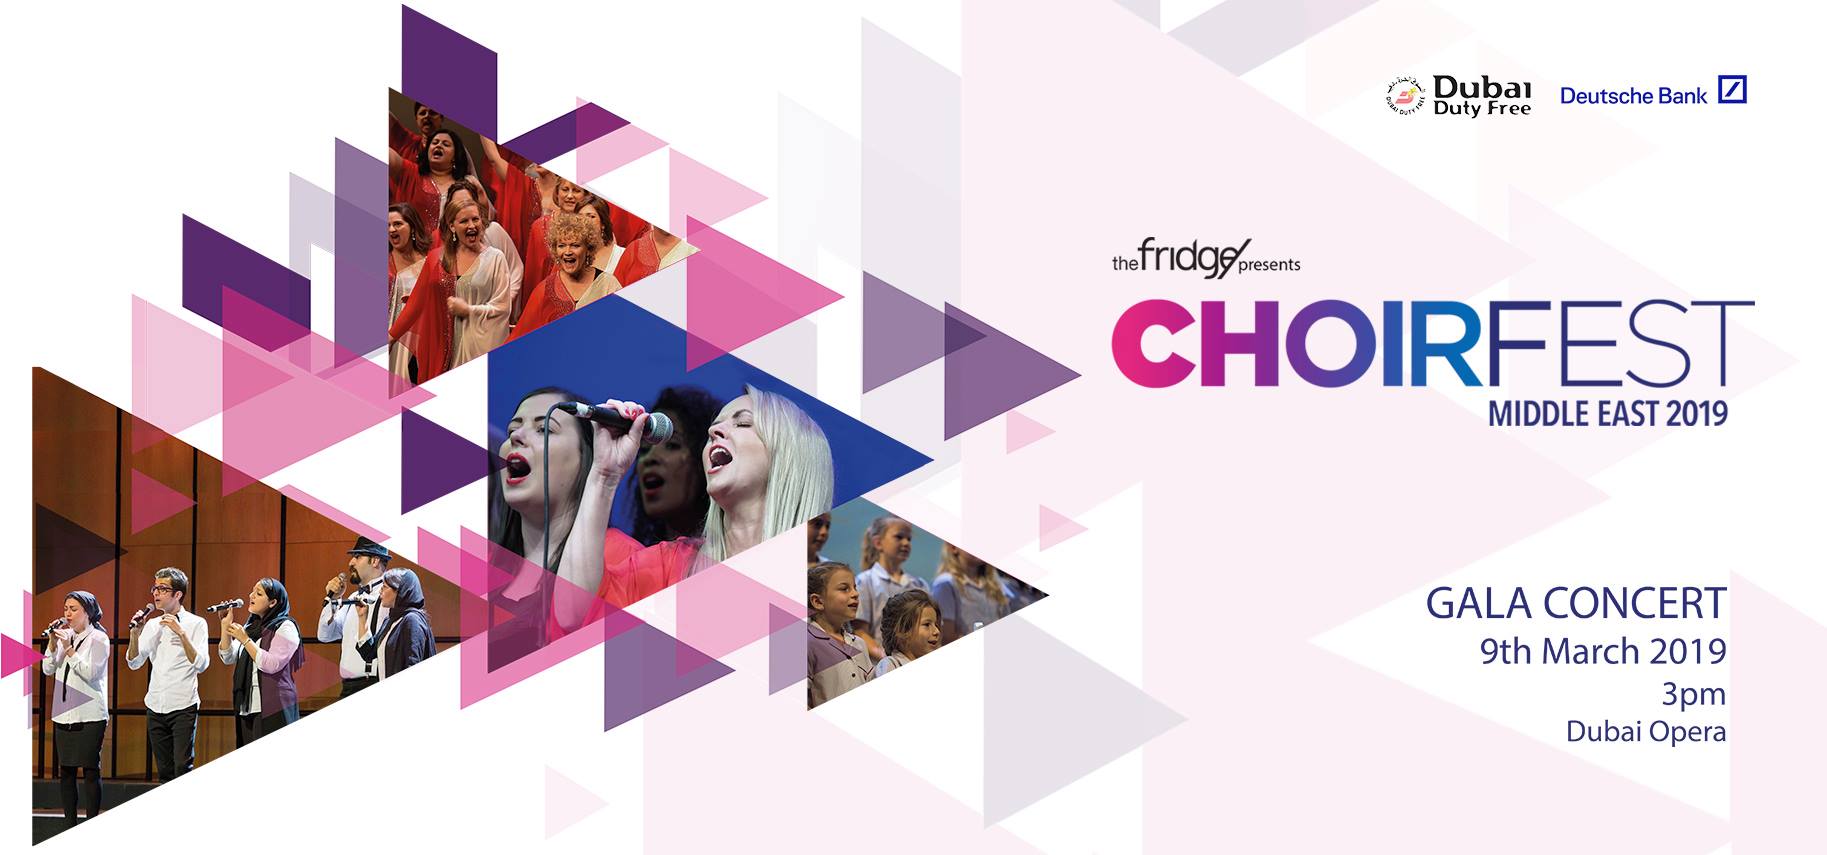 ChoirFest Middle East 2019 - Coming Soon in UAE